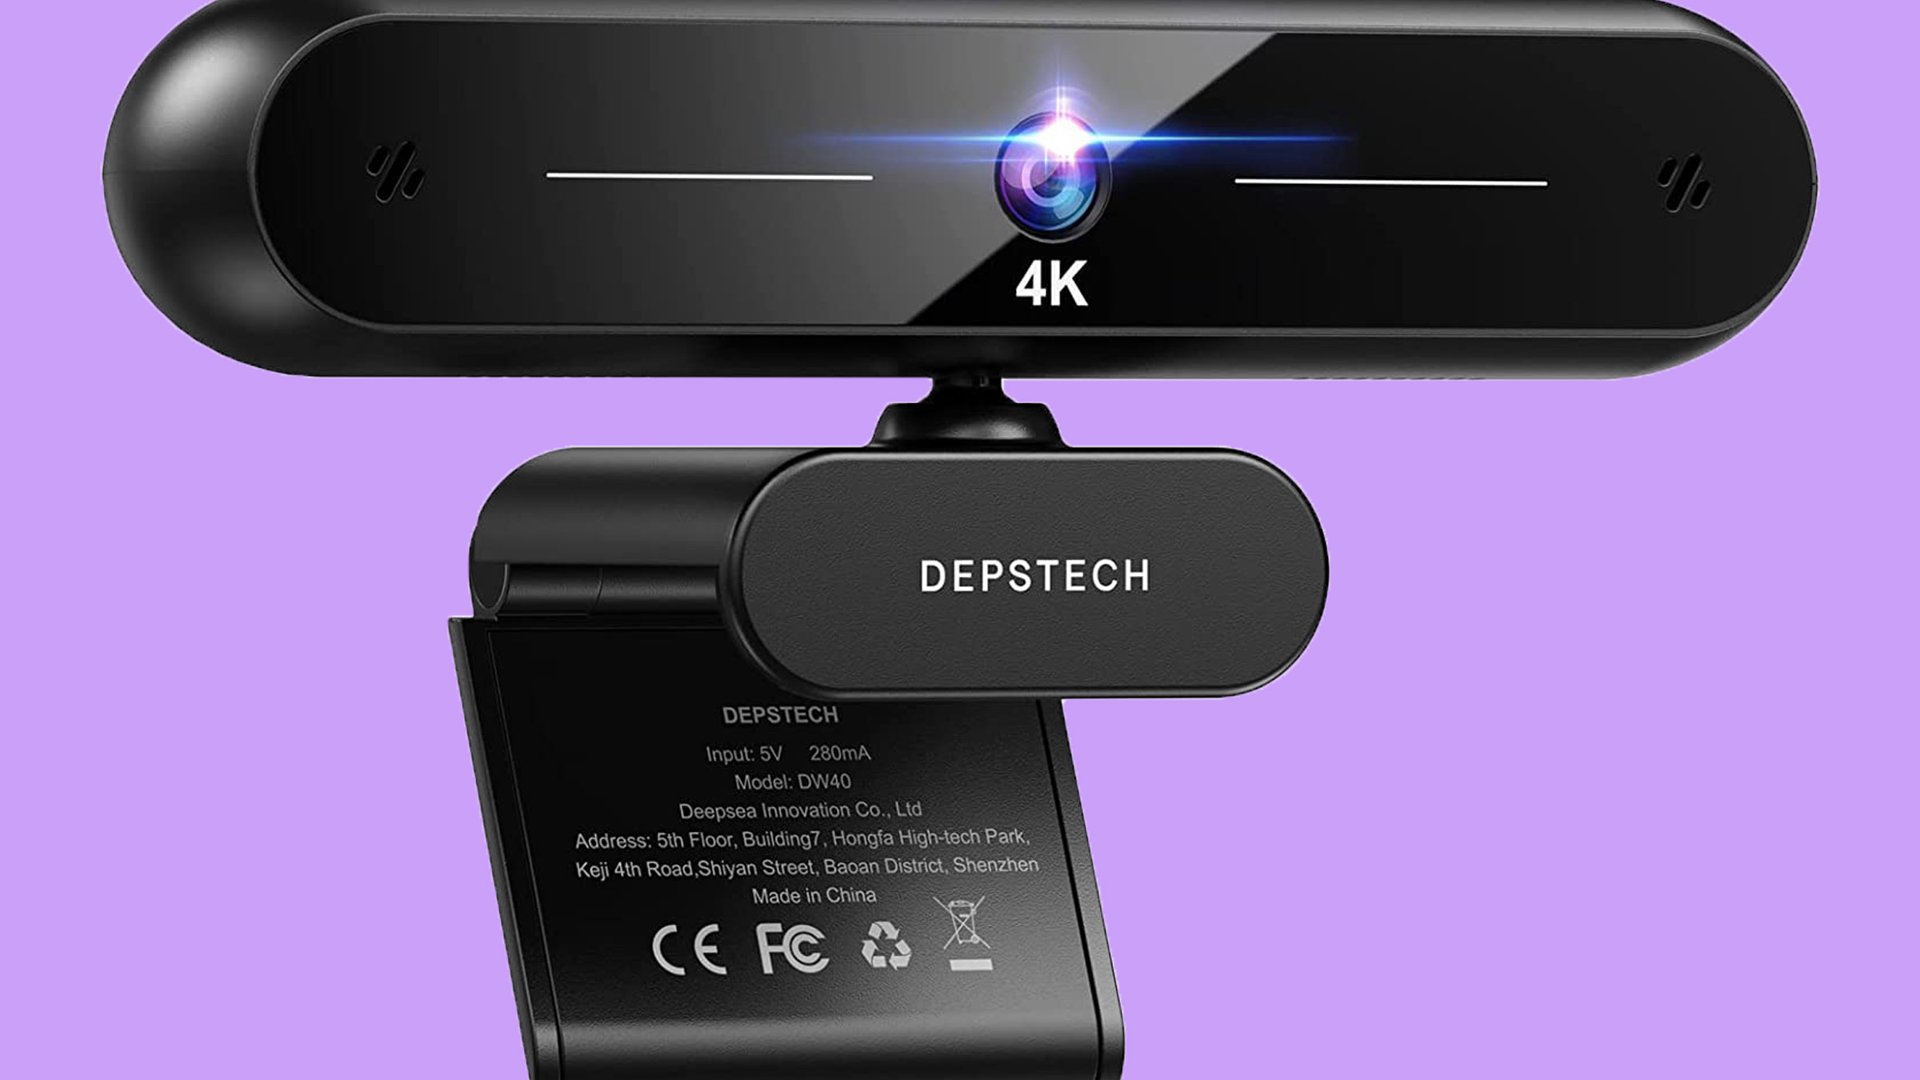 DEPSTECH DW40 webbkamera billig webbkamera på lila bakgrund